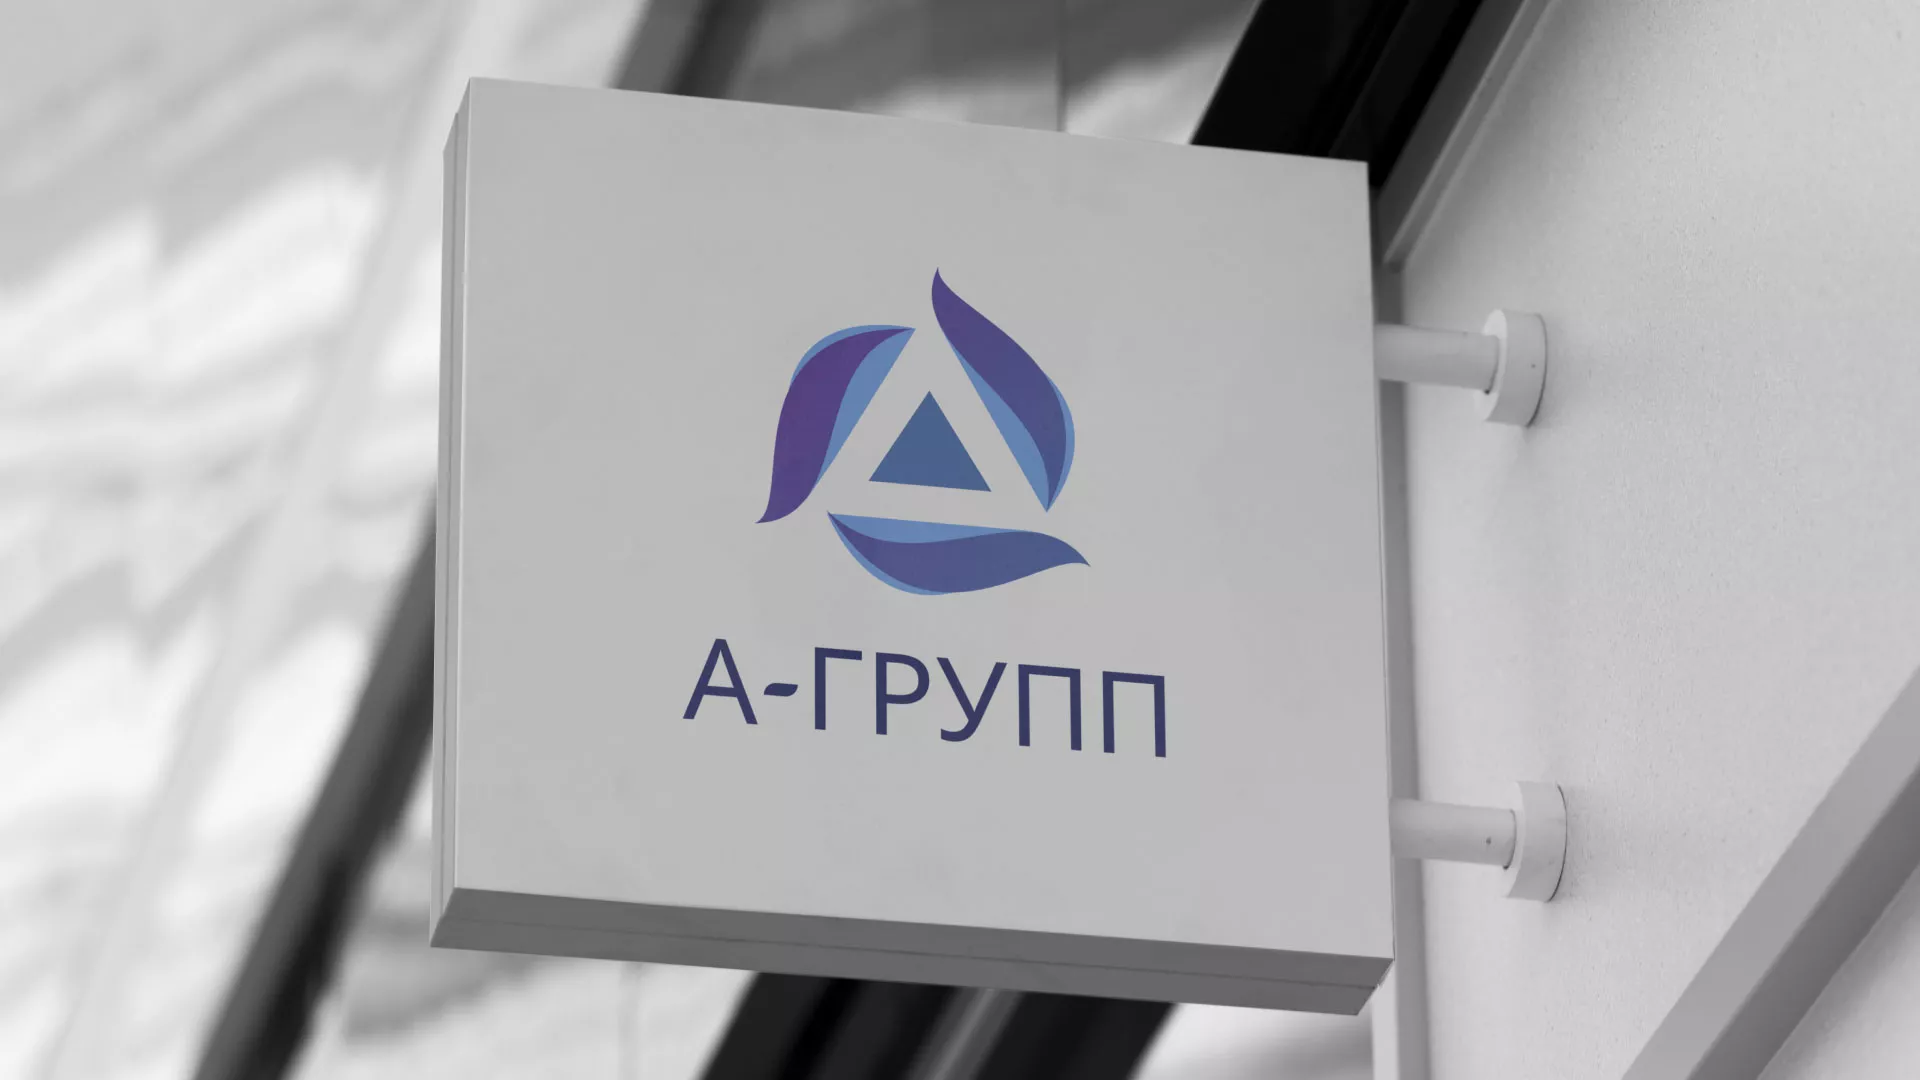 Создание логотипа компании «А-ГРУПП» в Одинцово